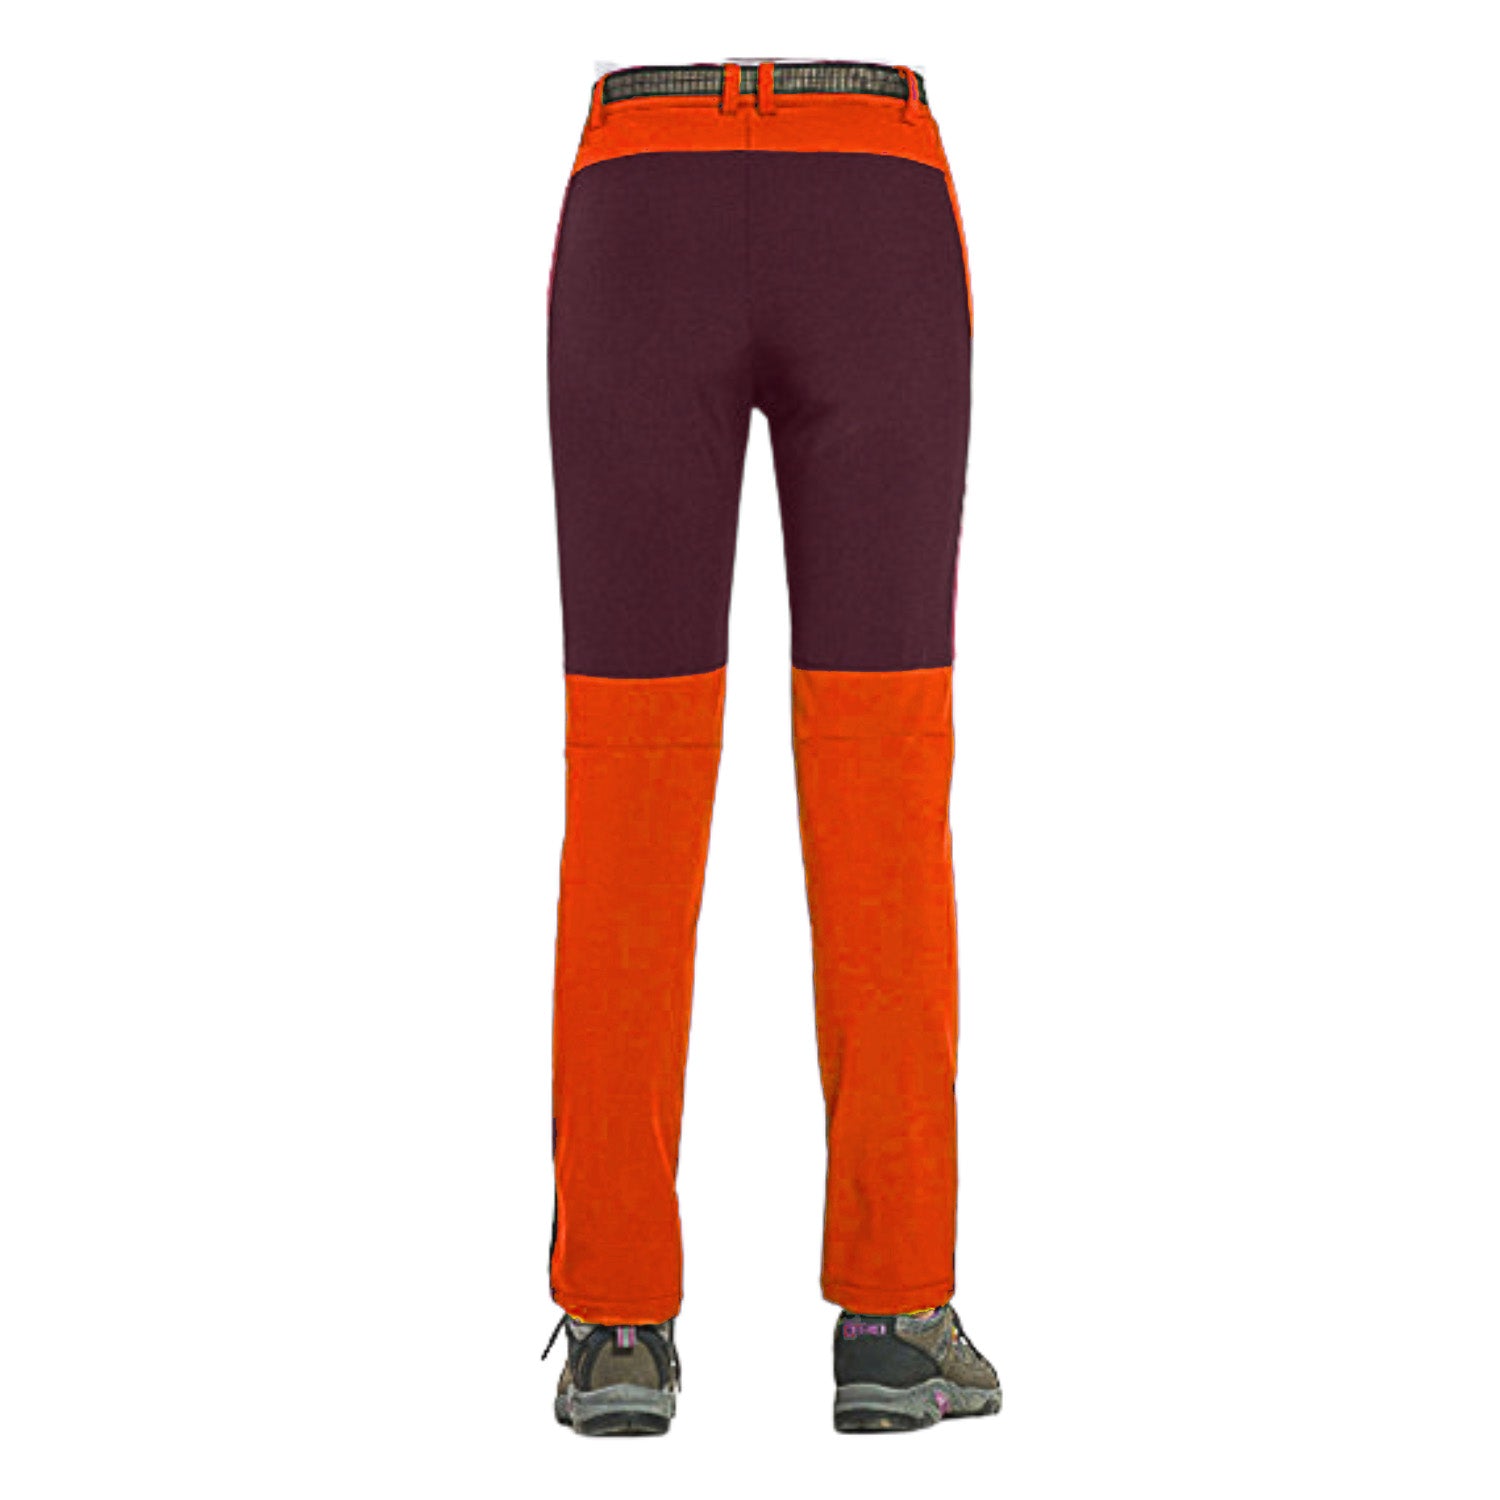 Buy Gokyo K2 Cold Weather Trekking & Outdoor Pants in Orange - Women | Trekking & Hiking Pants at Gokyo Outdoor Clothing & Gear